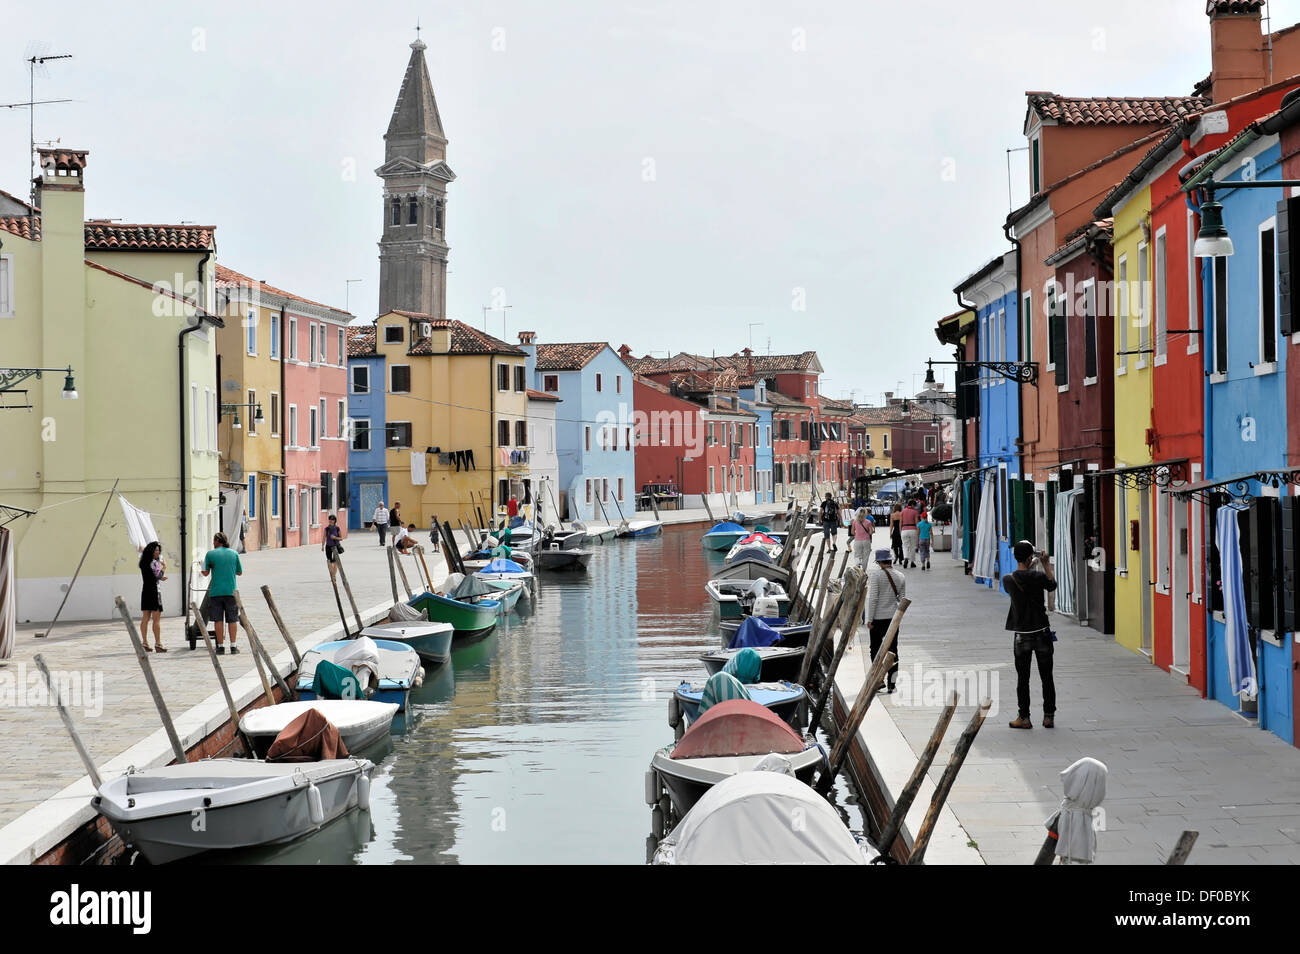 Bunt bemalten Häusern, Boote auf dem Kanal Burano, Burano Insel in der Lagune von Venedig, Italien, Europa Stockfoto